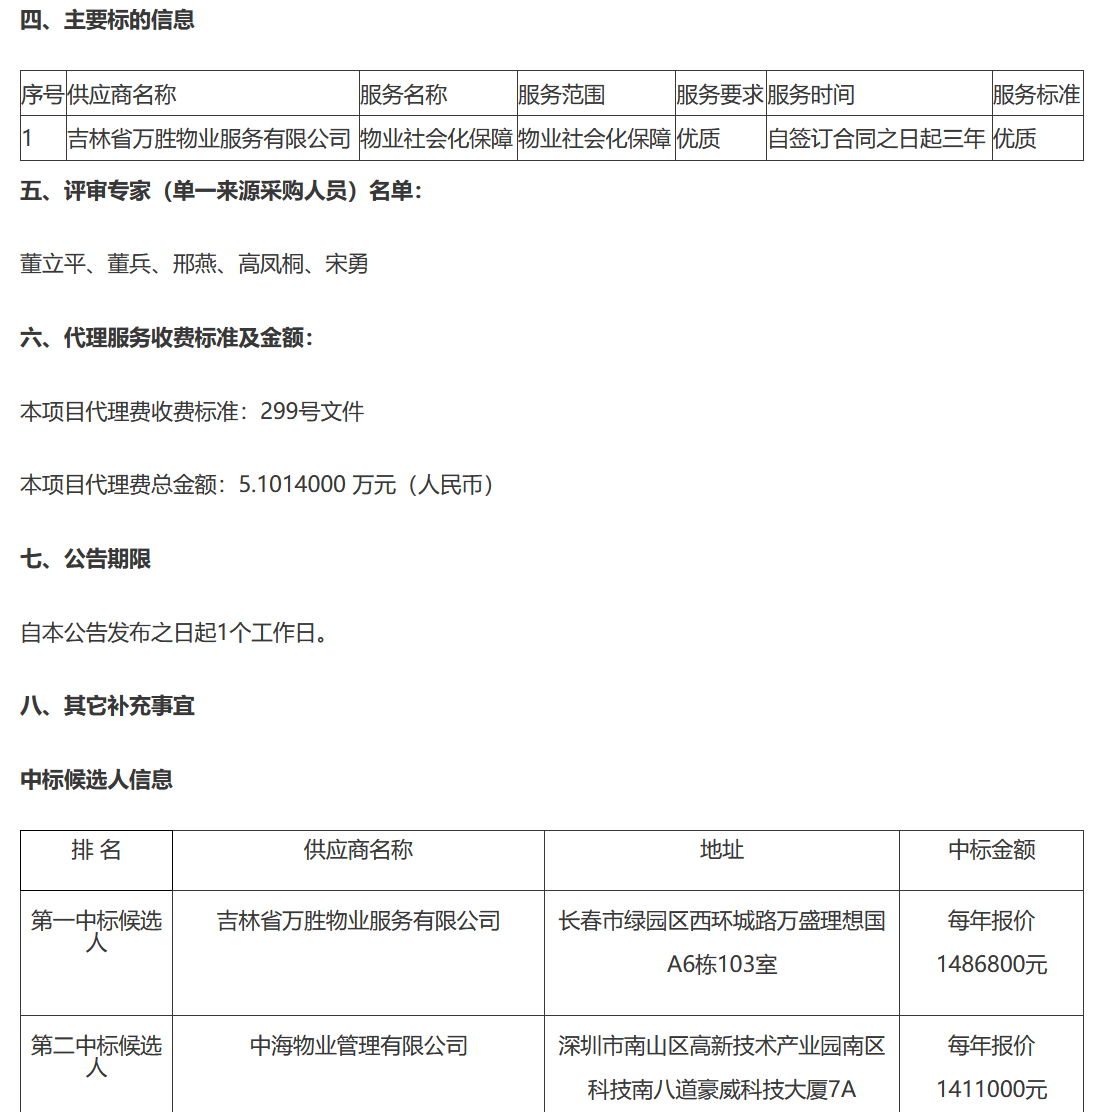 吉林省万胜物业中标某物业社会化保障项目-中国网地产